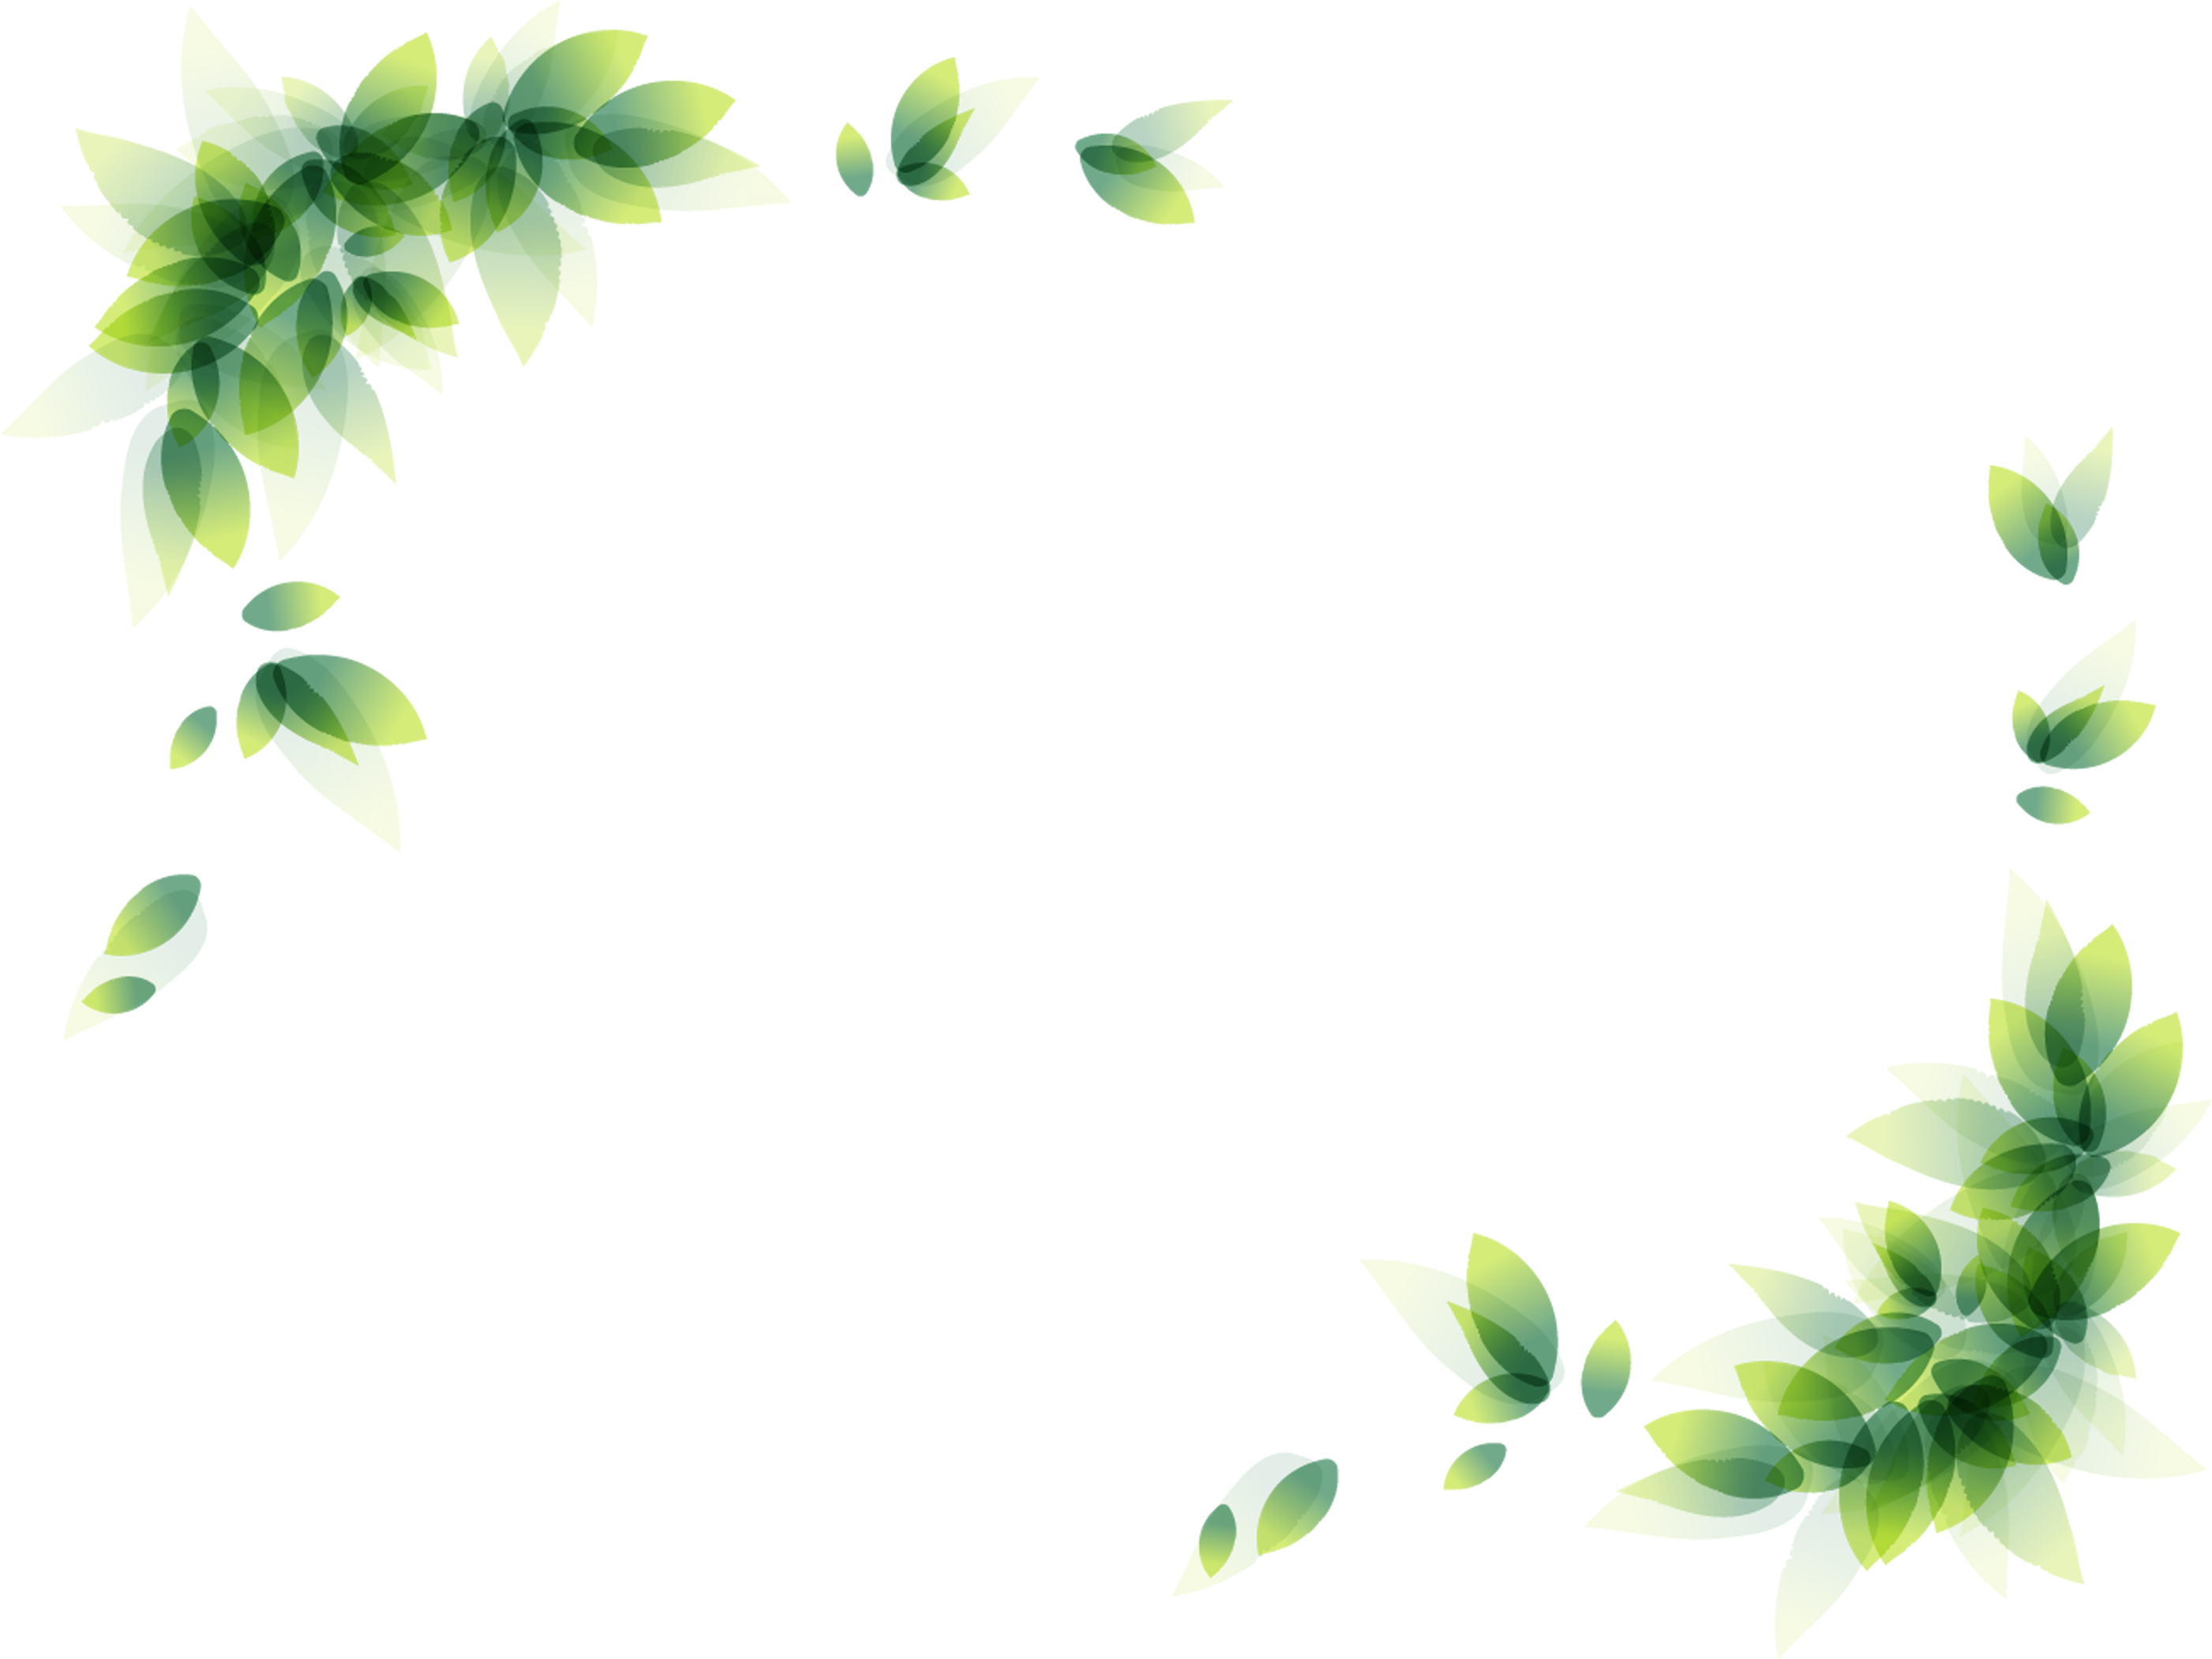 green leaf border design